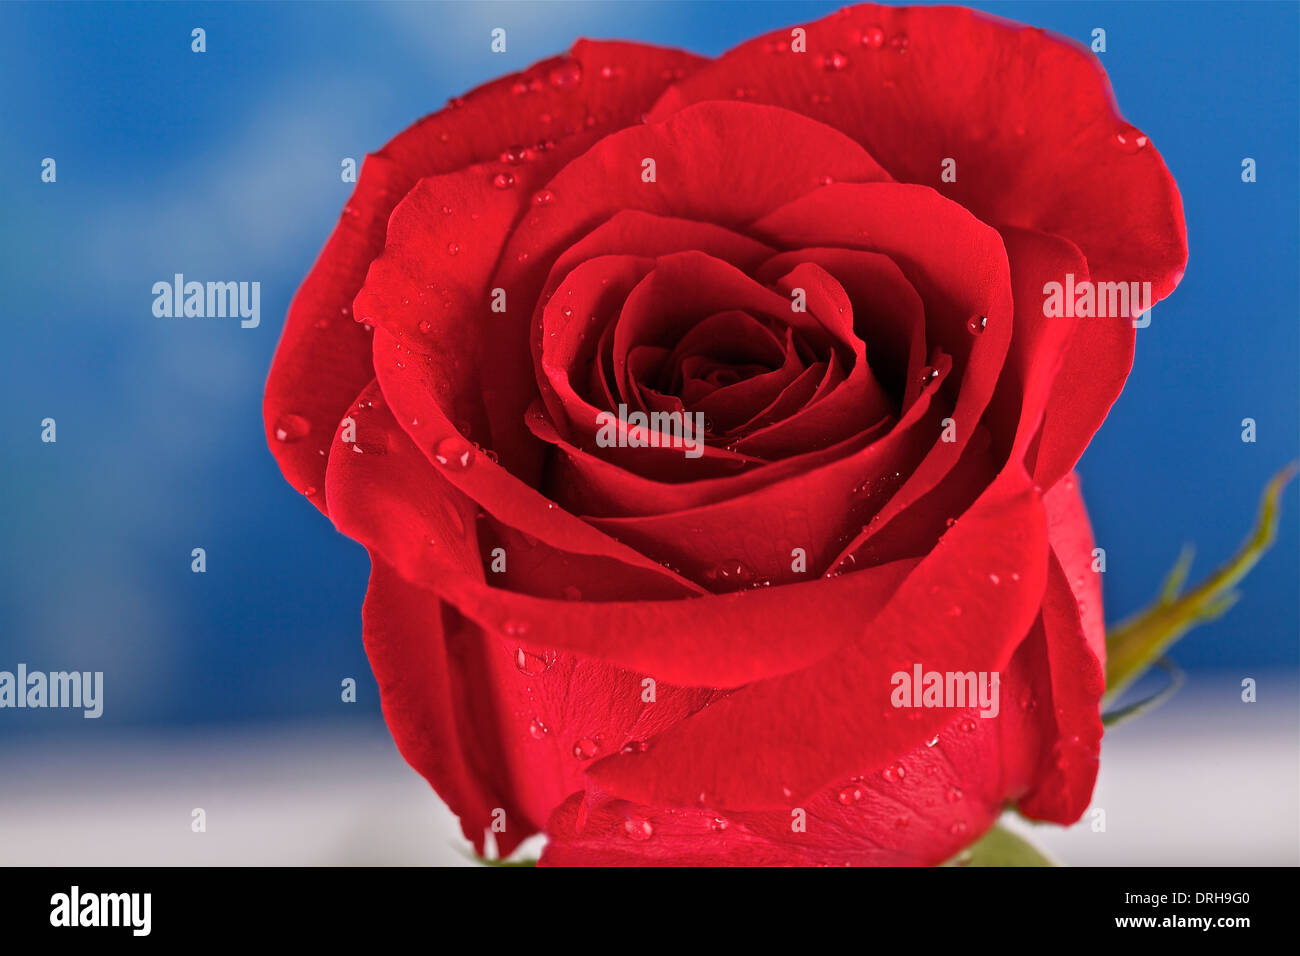 Urlaub blumenkopf rote rose fotografie keine menschen feier -Fotos und  -Bildmaterial in hoher Auflösung – Alamy